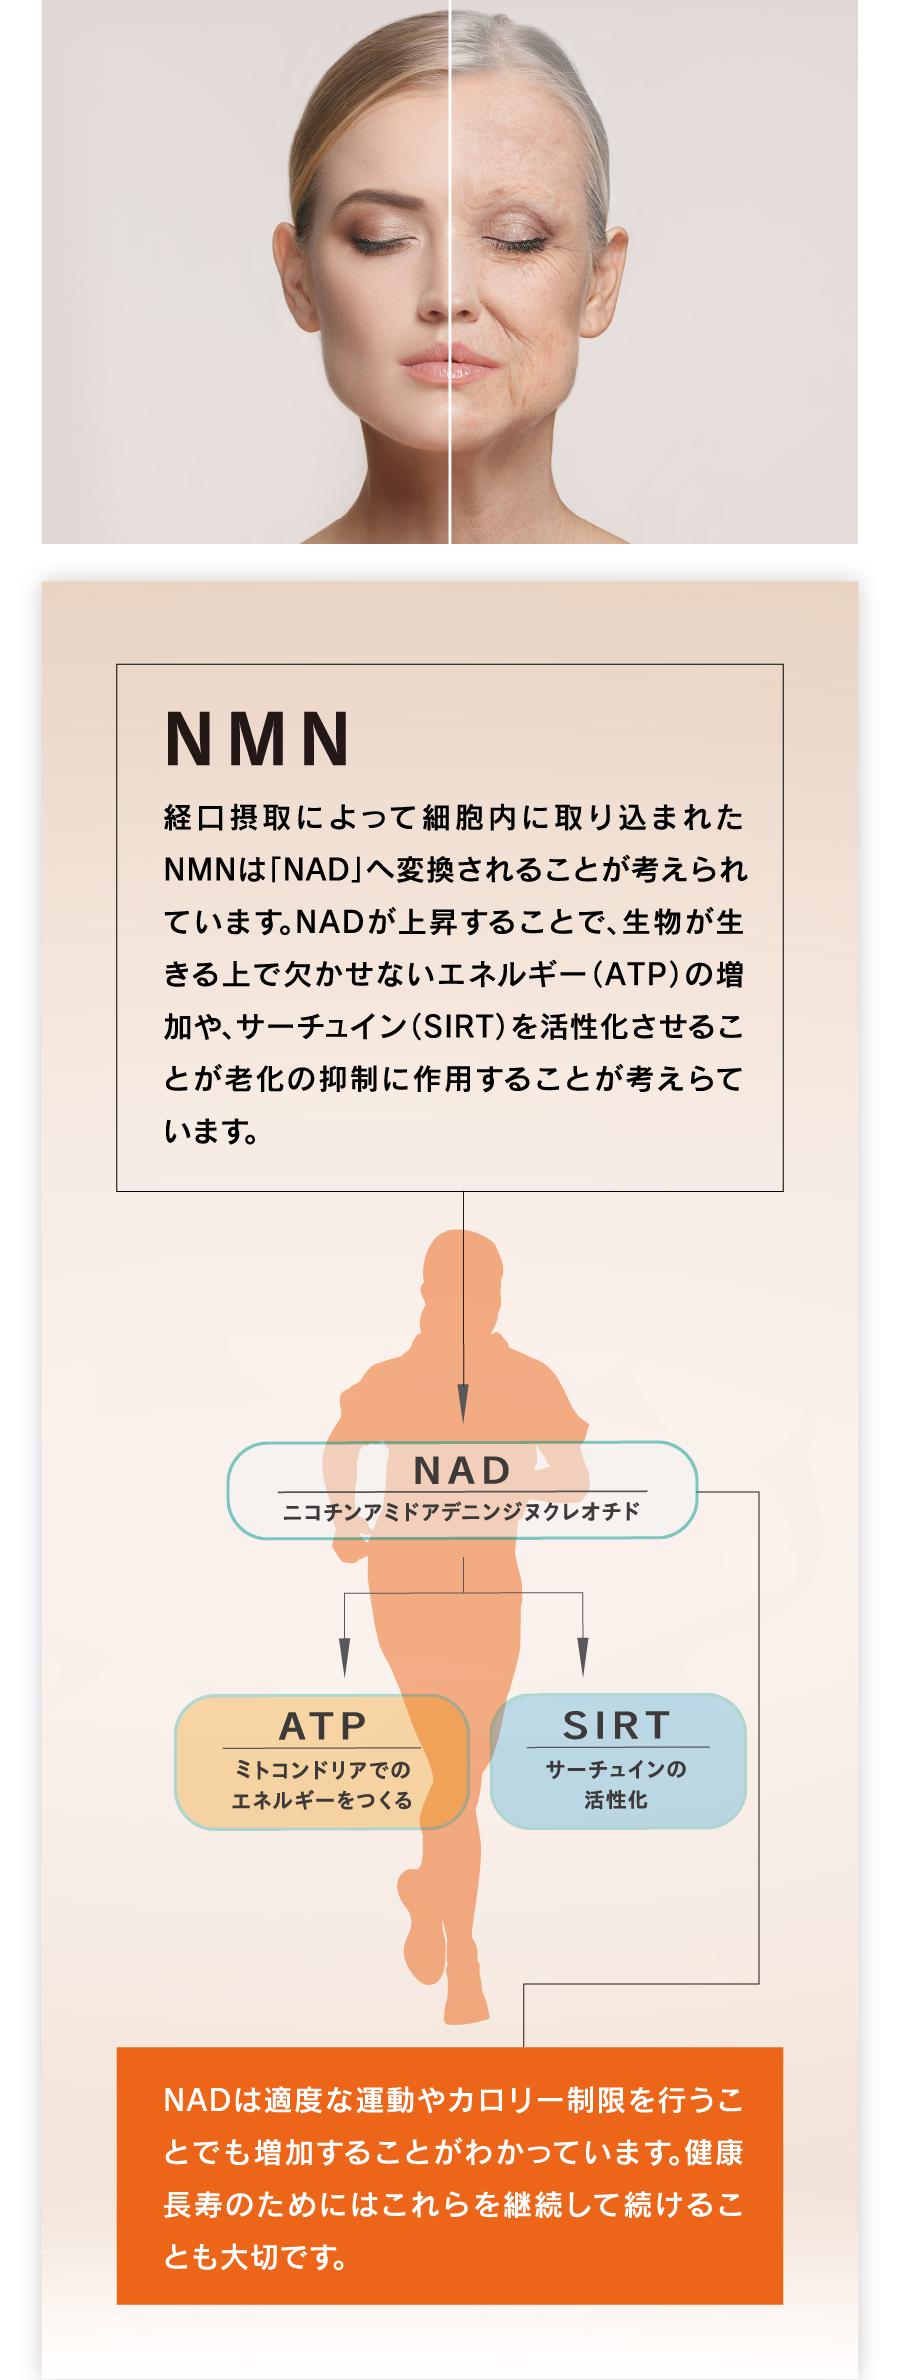 NMN NMNの経口摂取によって細胞内に取り込まれたNMNは「NAD」へ変換されることが考えられています。NADが上昇することで、生物が生きる上で欠かせないエネルギー（ATP）の増加や、サーチェイン（SIRT）を活性化させることが老化の抑制に作用することが考えらています。NADは適度な運動やカロリー制限を行うことでも増加することがわかっています。健康長寿のためにはこれらを継続して続けることも大切です。